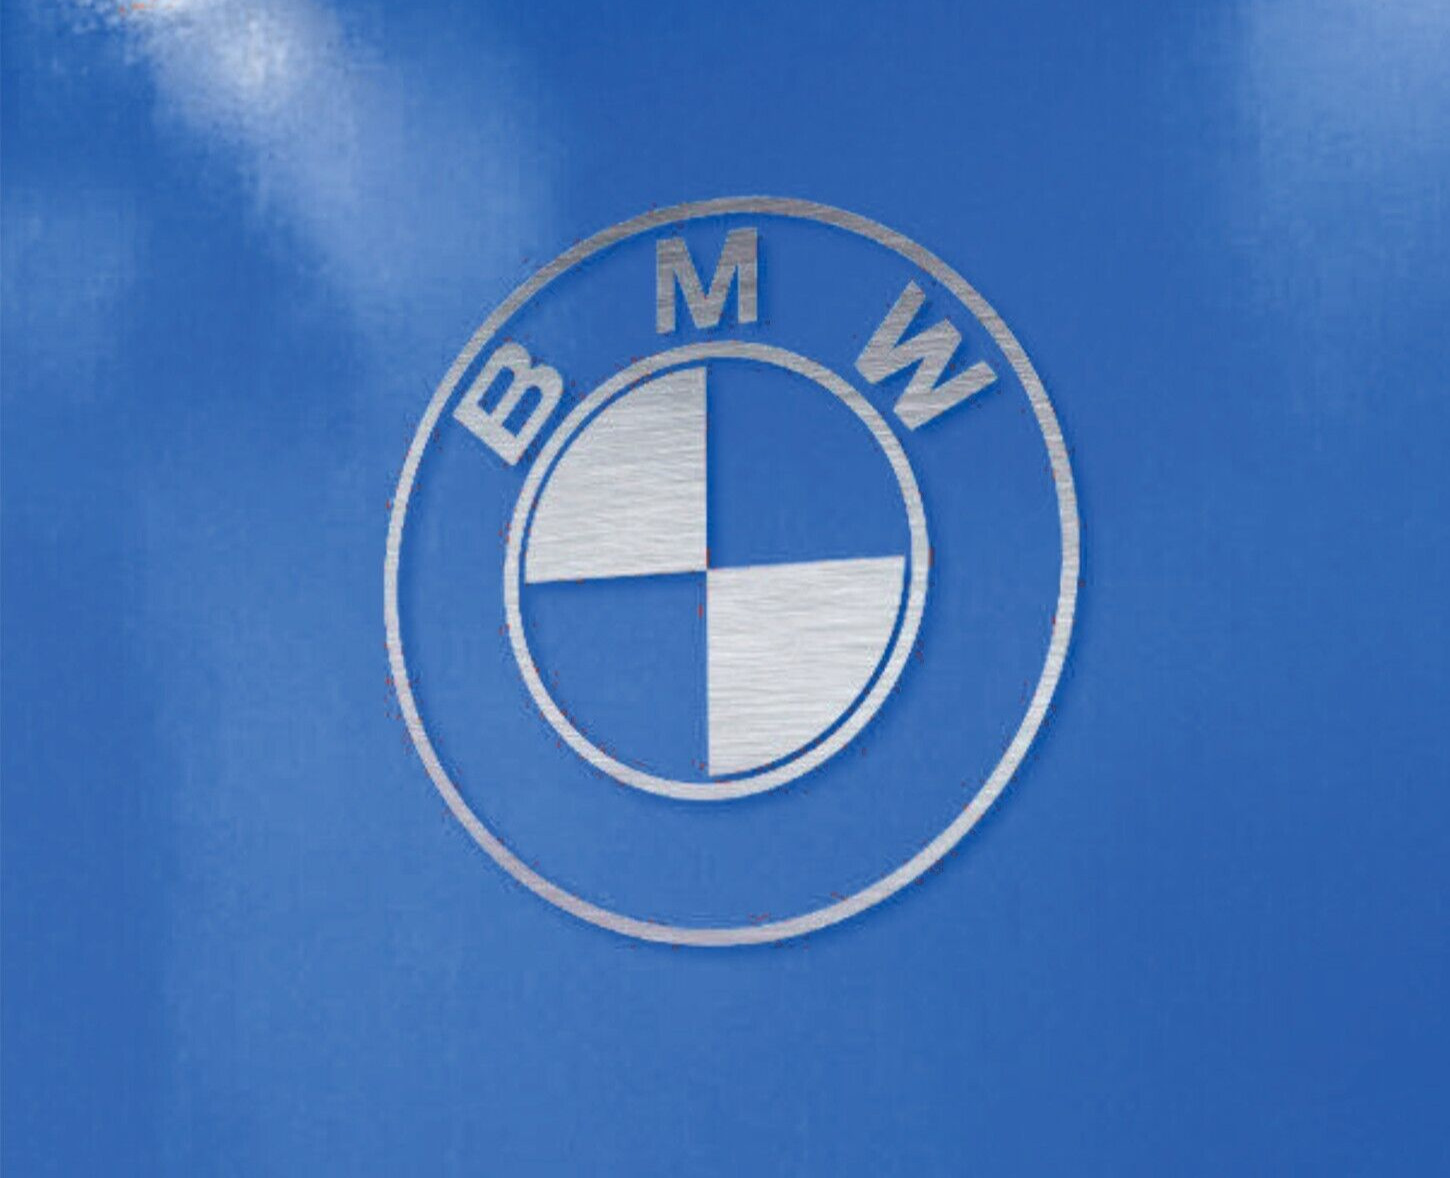 Large BMW Logo Garage Sign Automotive For Shop Office Rec Room Man Cave Dad Gift